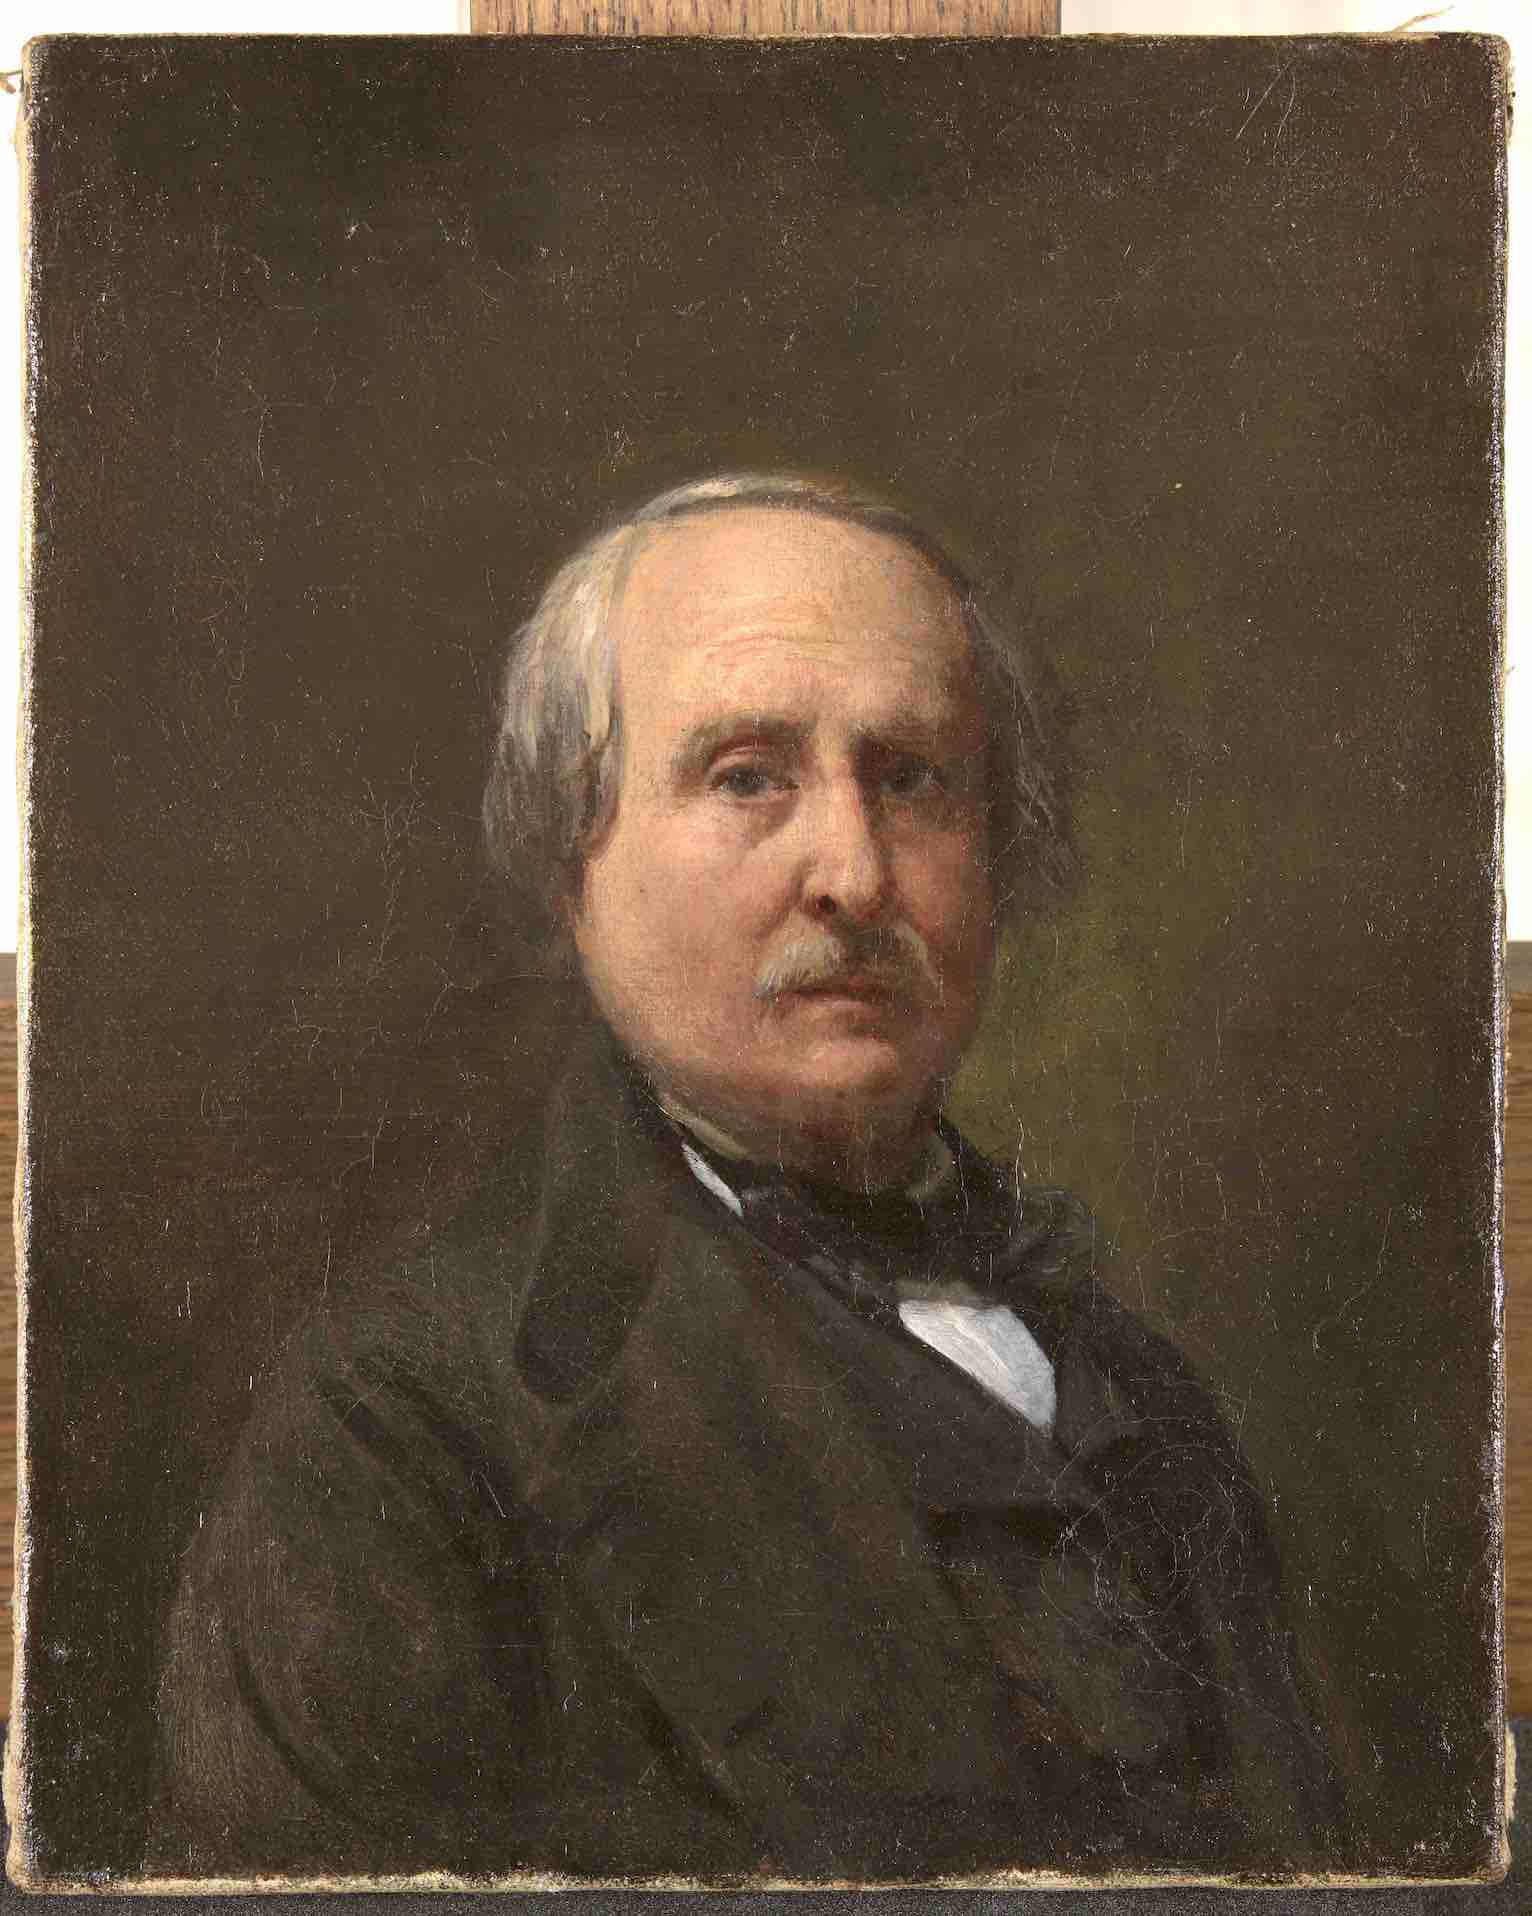 Biard, Autoportrait, 1870-1875, oil painting©Chateau de Versailles, RMN-Grand Palais, Christophe Fouin